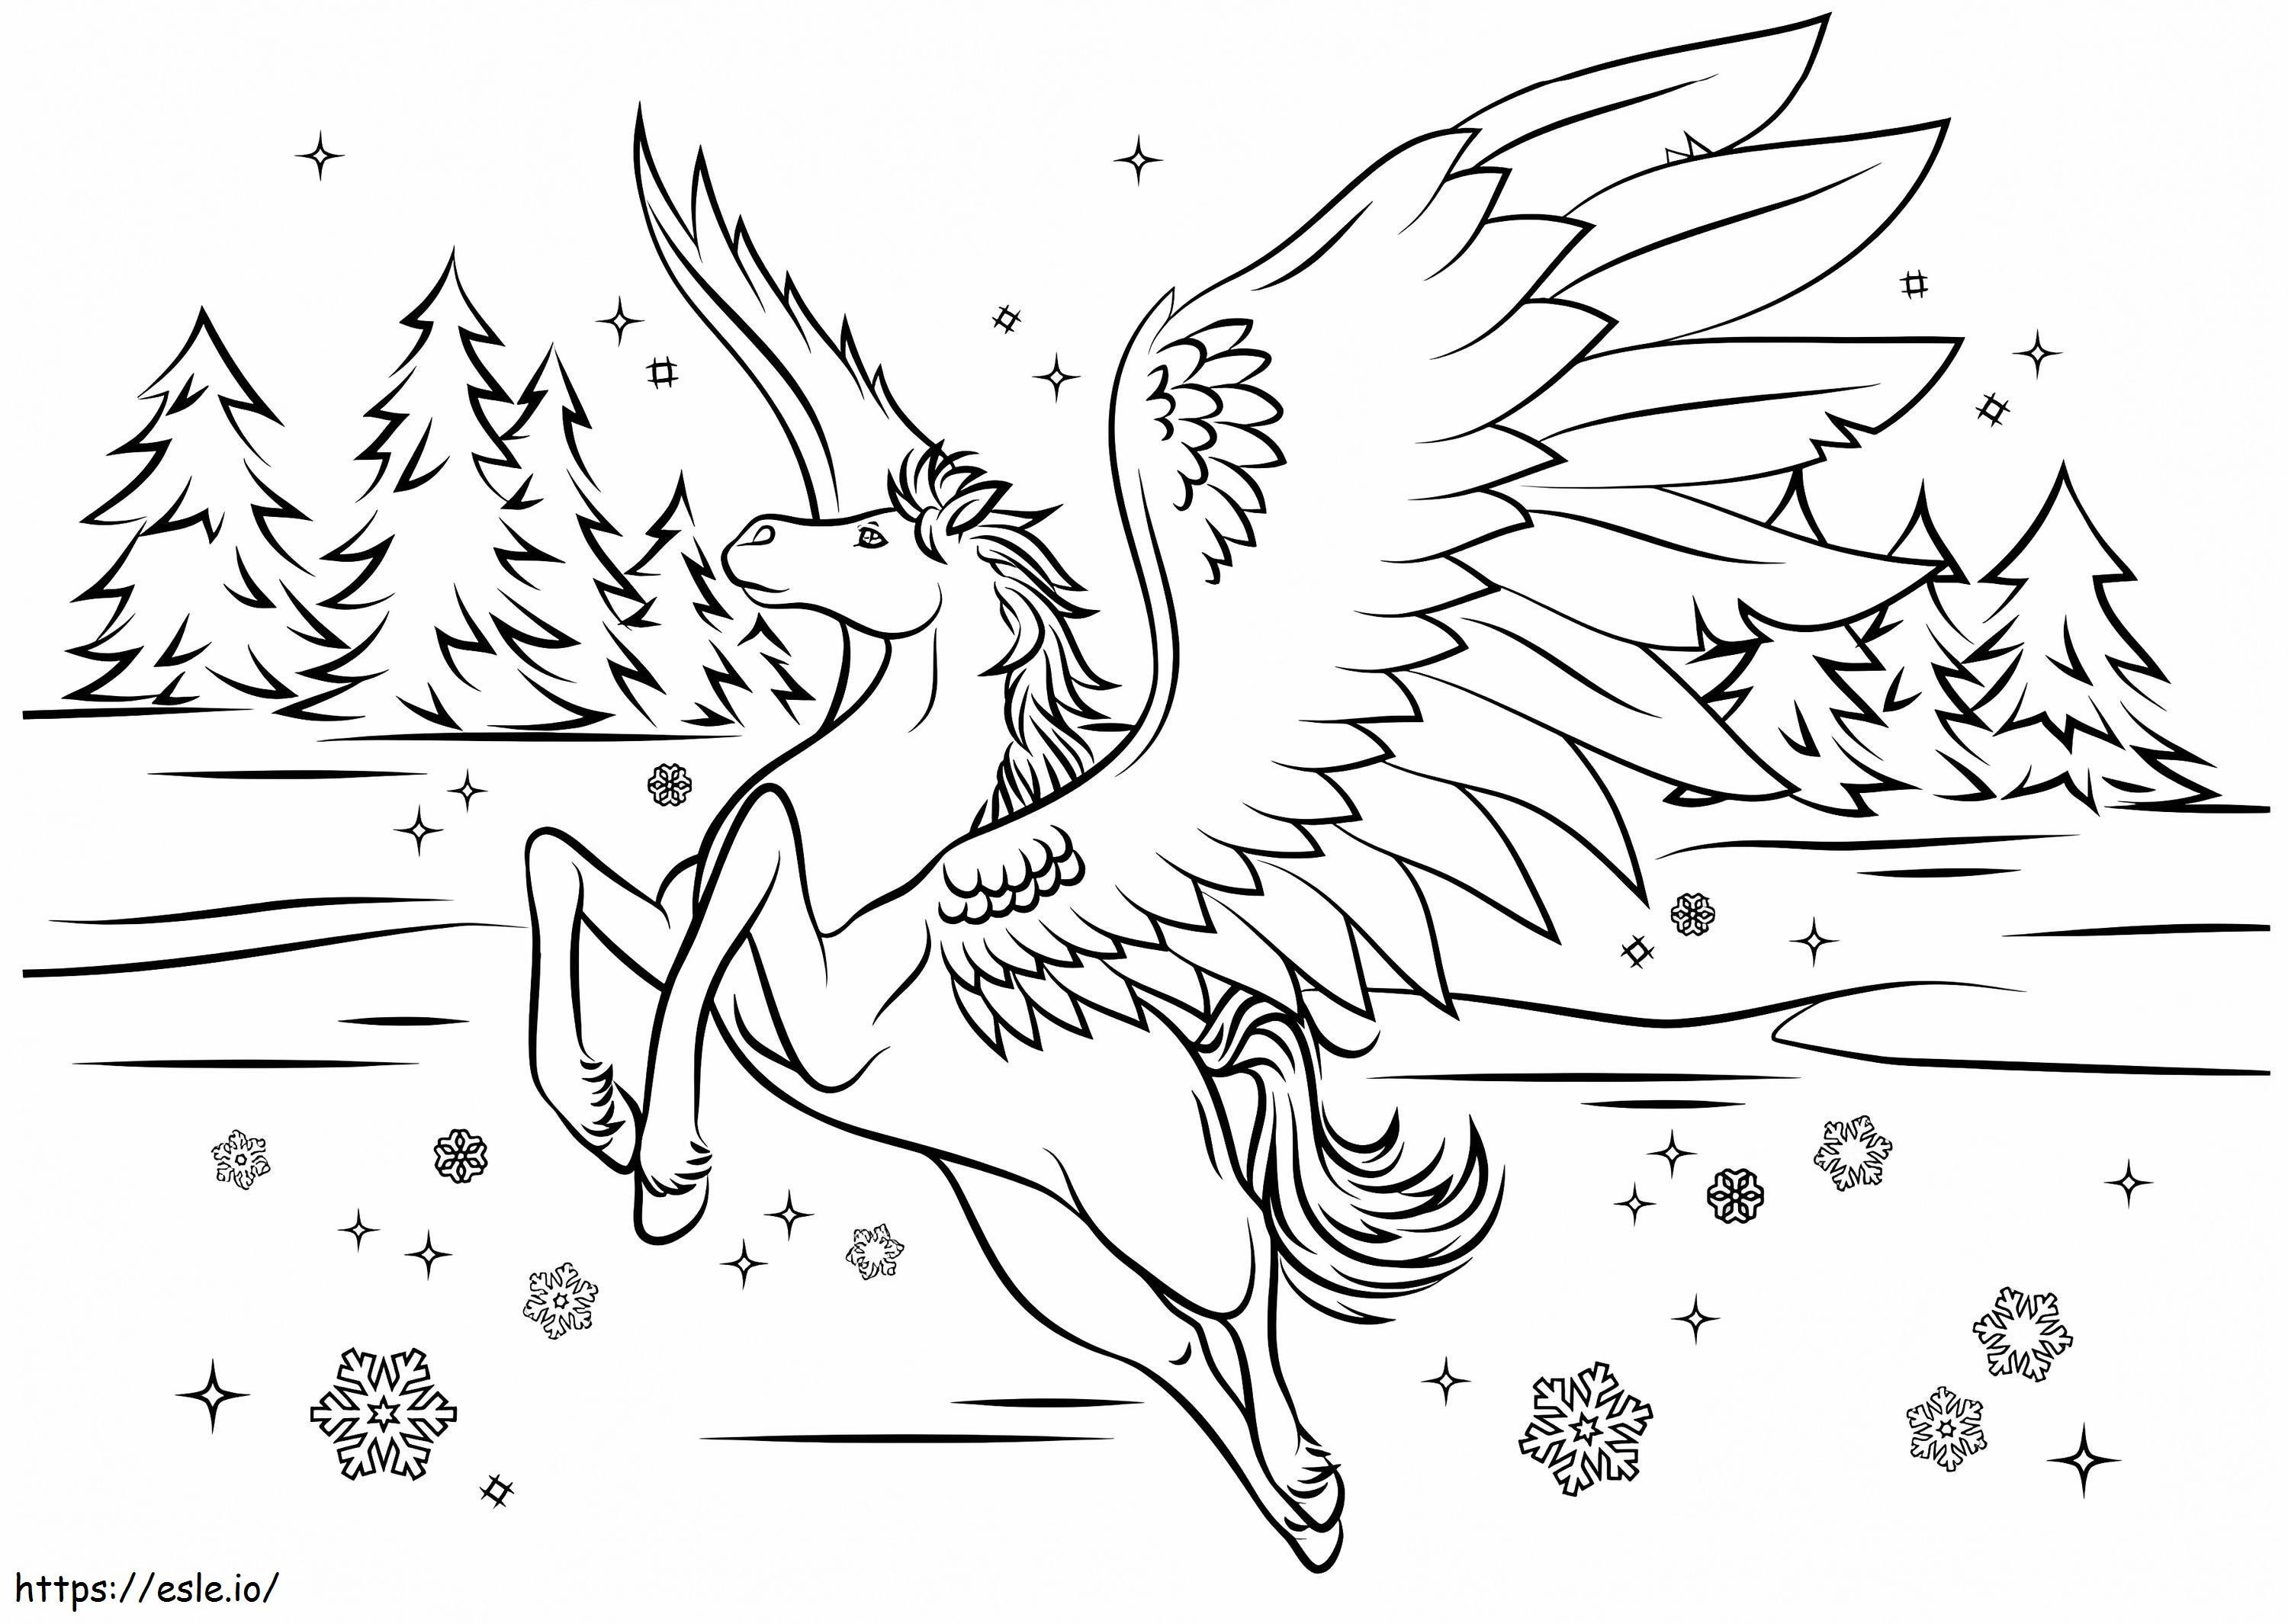  Pegasus im Winter A4 ausmalbilder